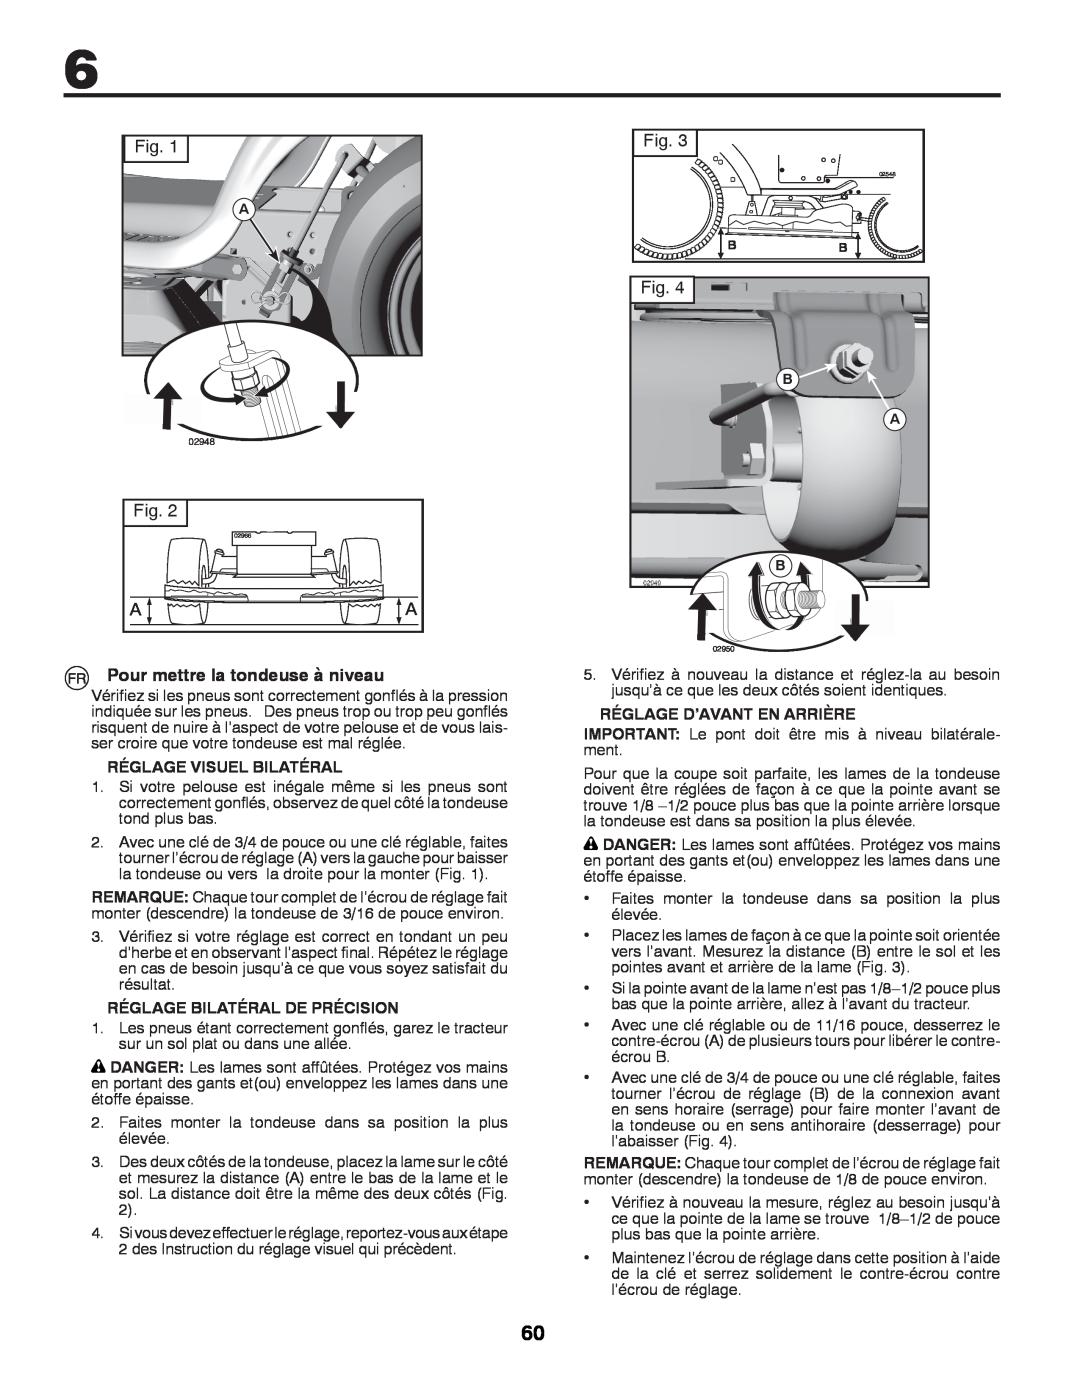 McCulloch 96041009101 manual Pour mettre la tondeuse à niveau, Réglage Visuel Bilatéral, Réglage Bilatéral De Précision 